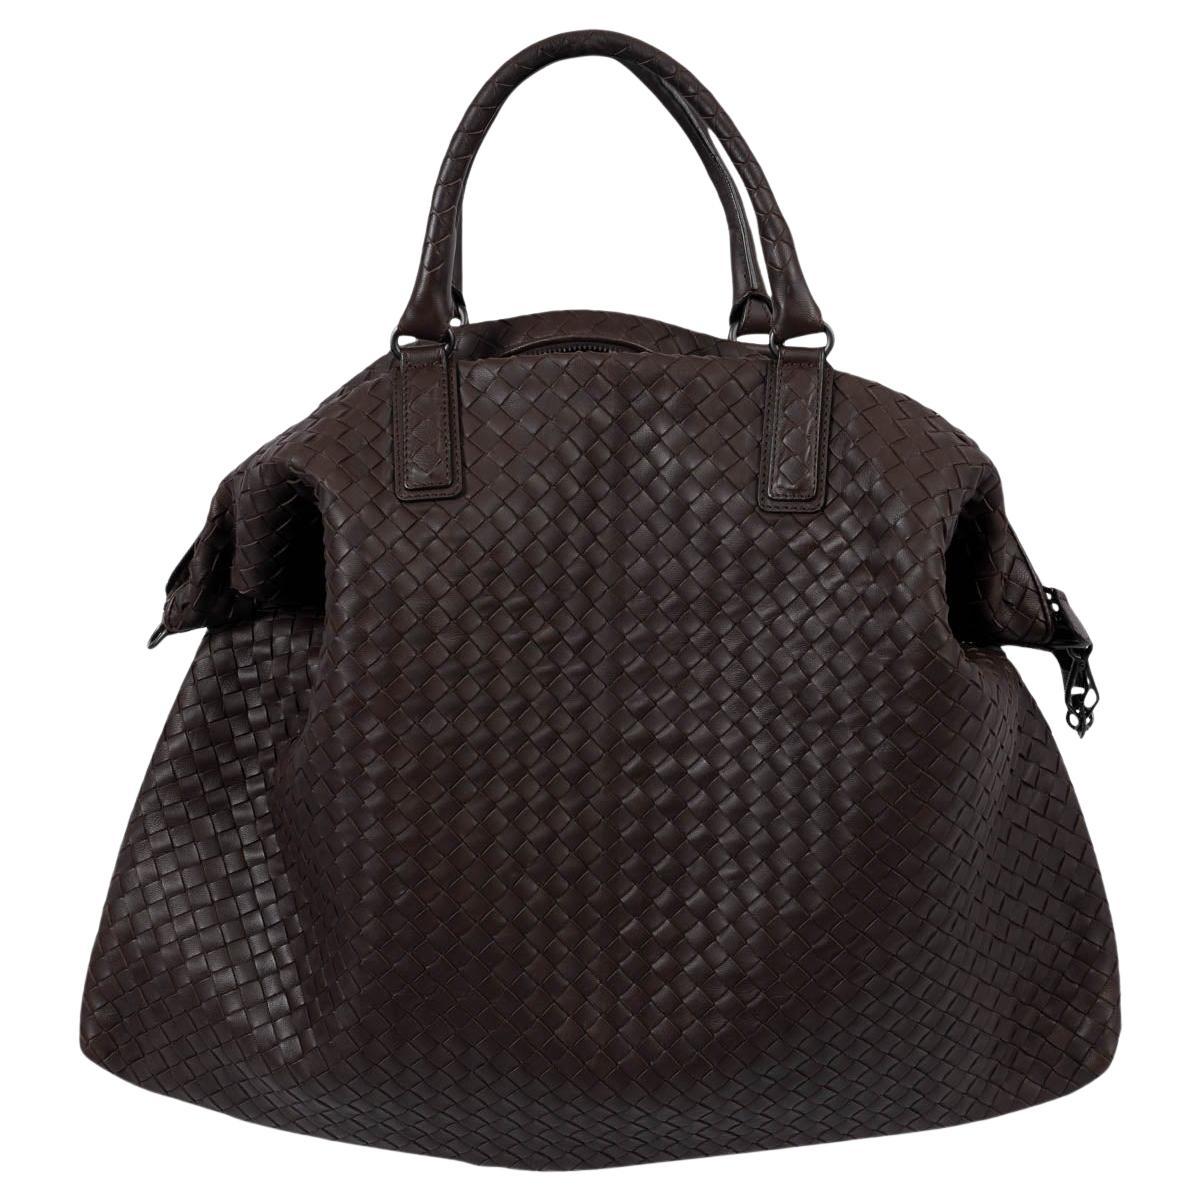 BOTTEGA VENETA Ebano brown leather INTRECCIATO MAXI CONVERTIBLE TOTE Bag For Sale